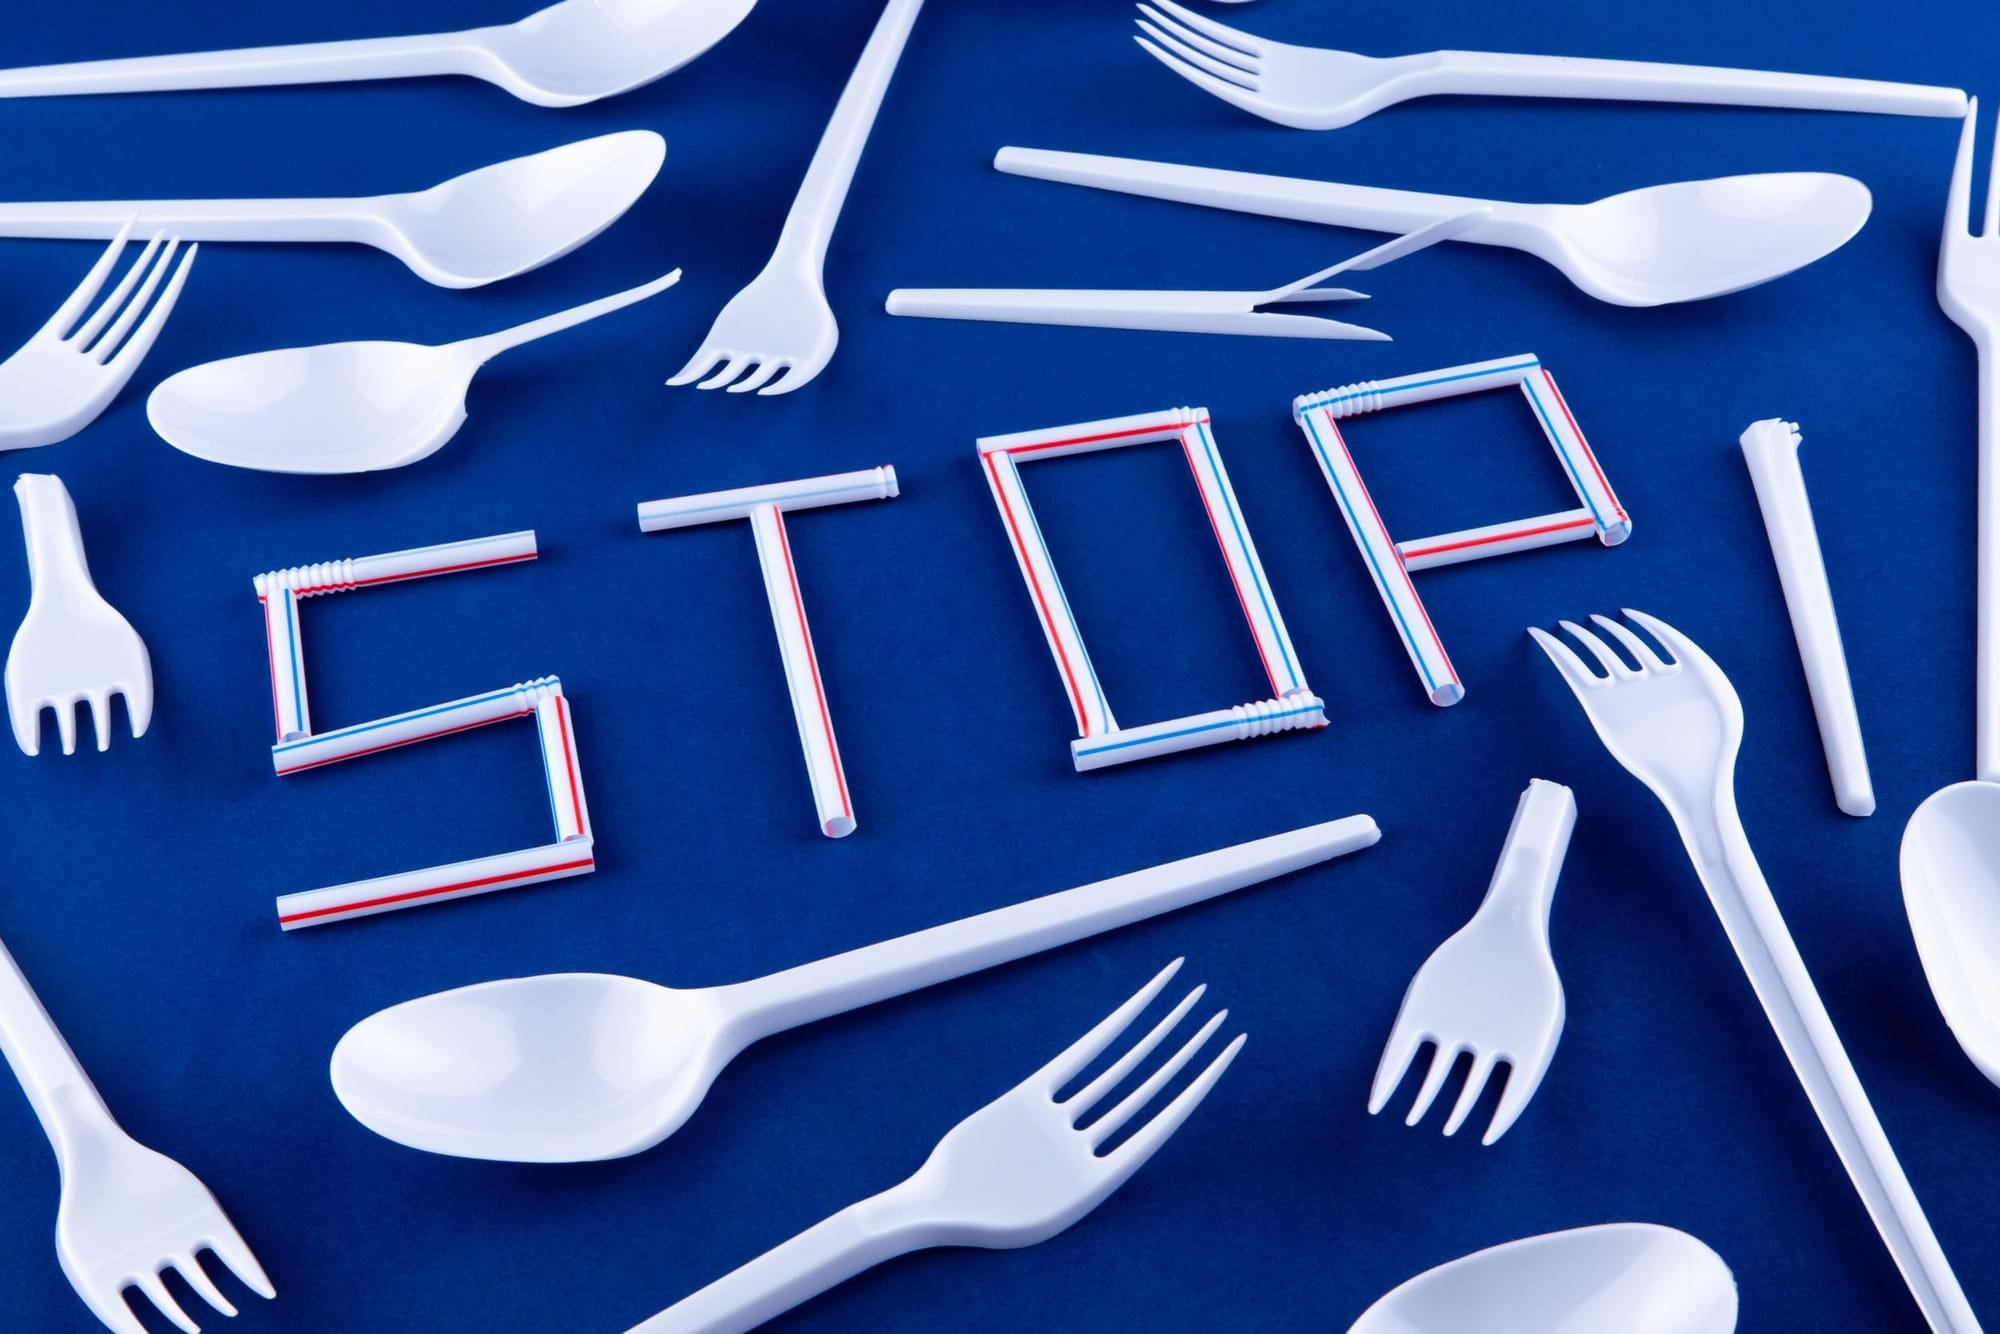 طهي وحفظ الطعام بأدوات بلاستيكية ينقل مواد سامة إلى جسمك